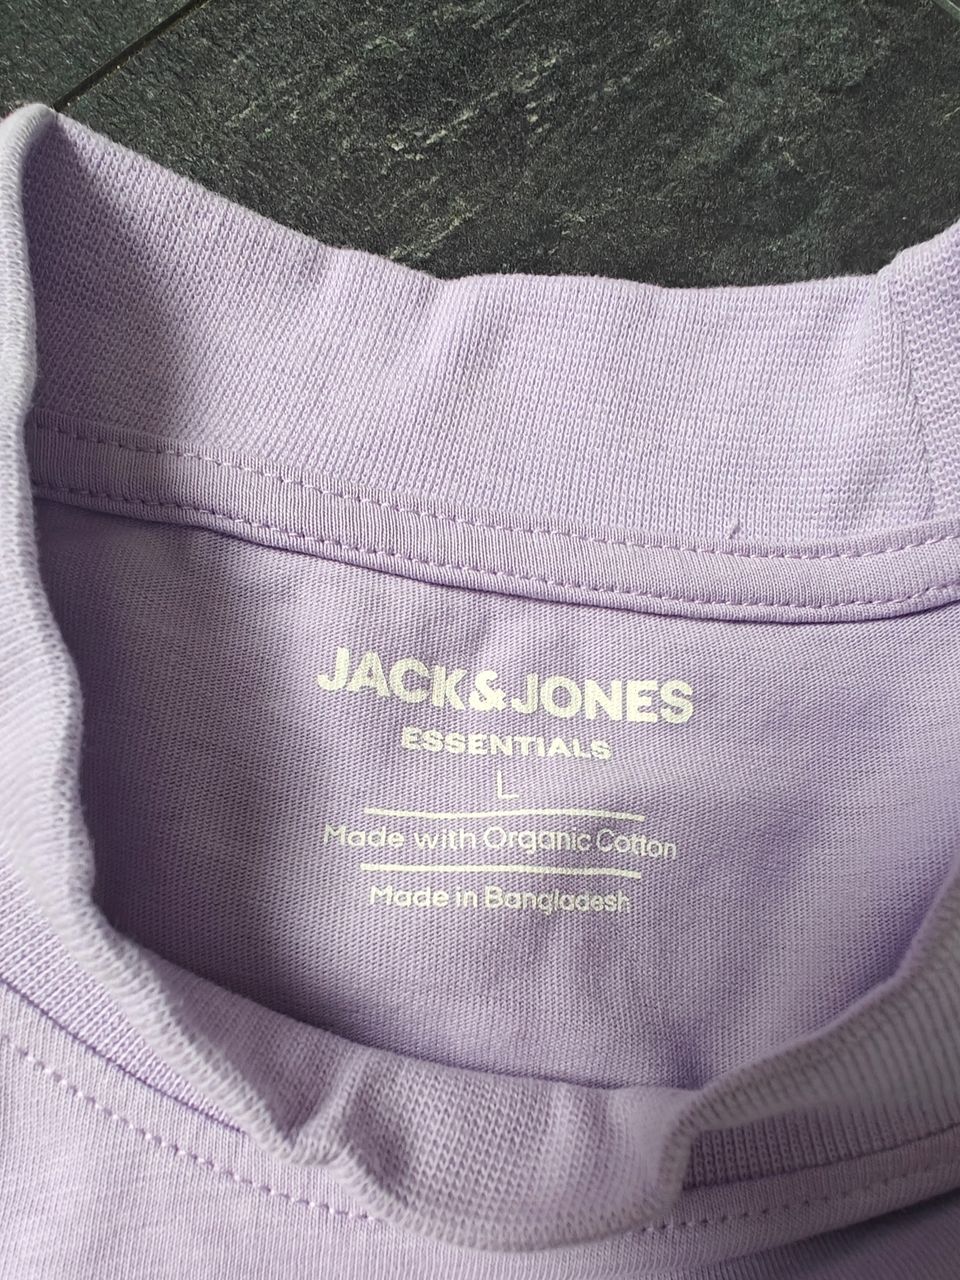 Jack & Jones päitä (liila/violetti)